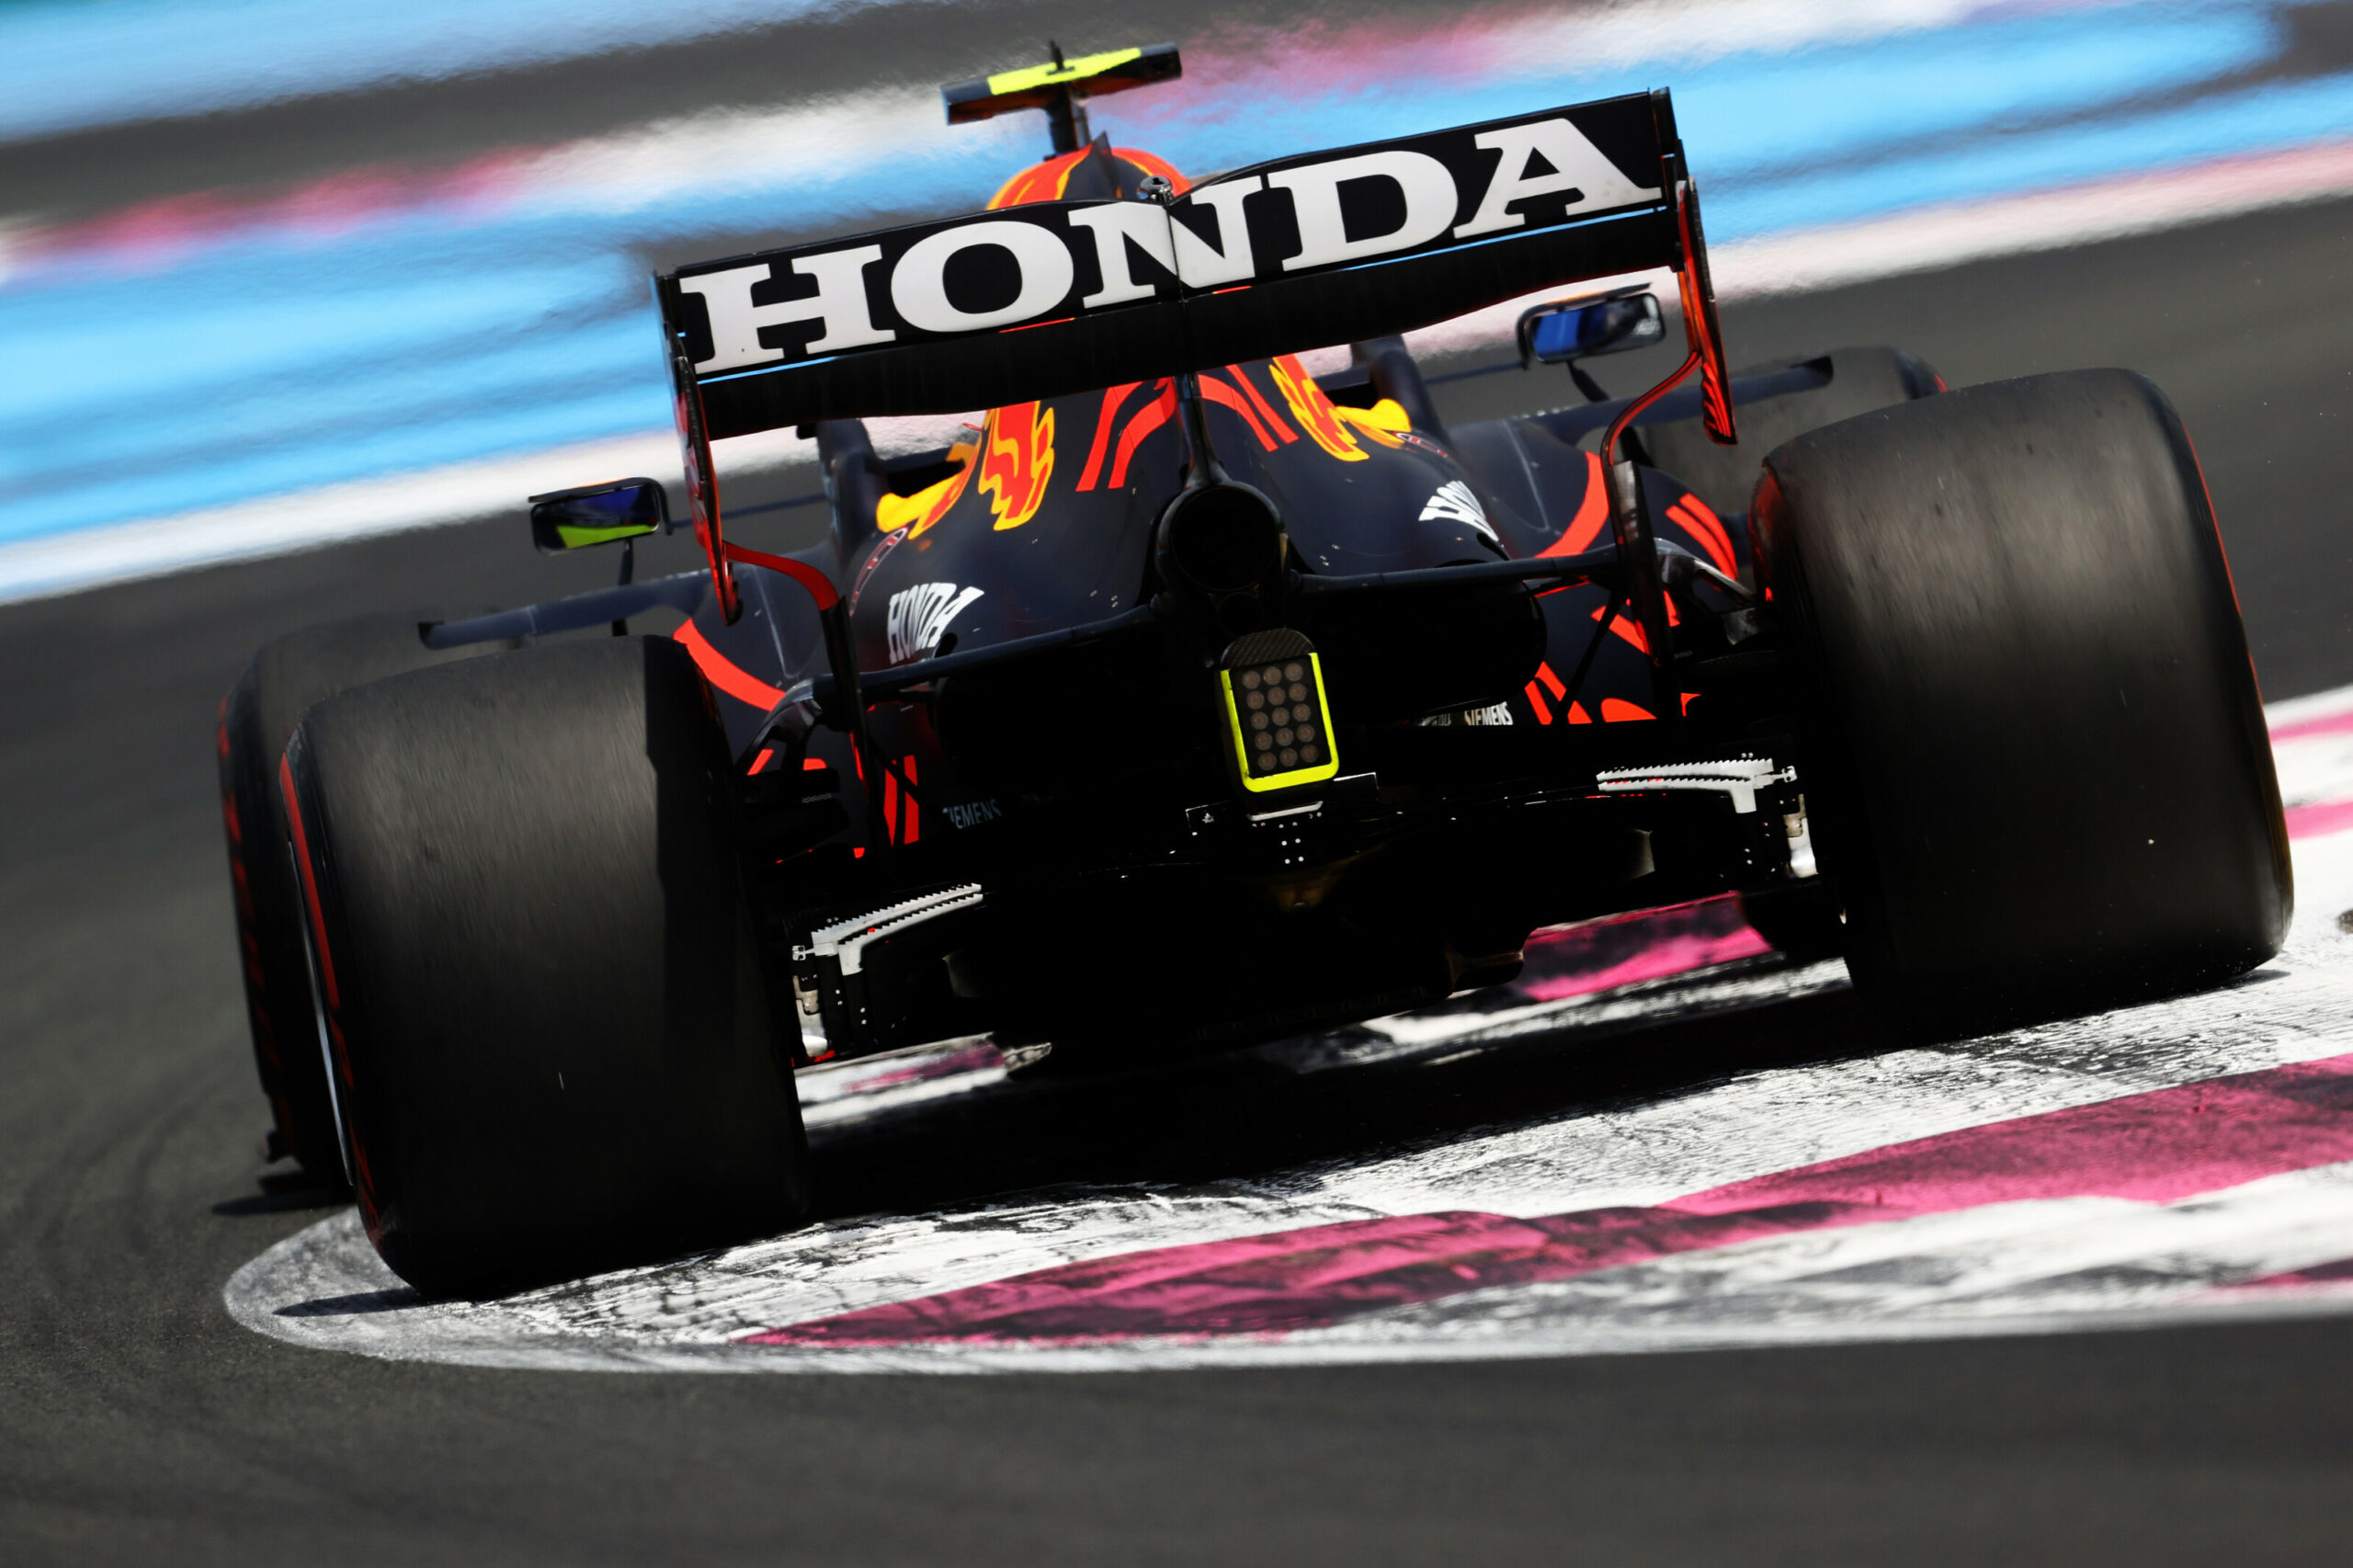 F1 - Max Verstappen en pole position au Grand Prix de France